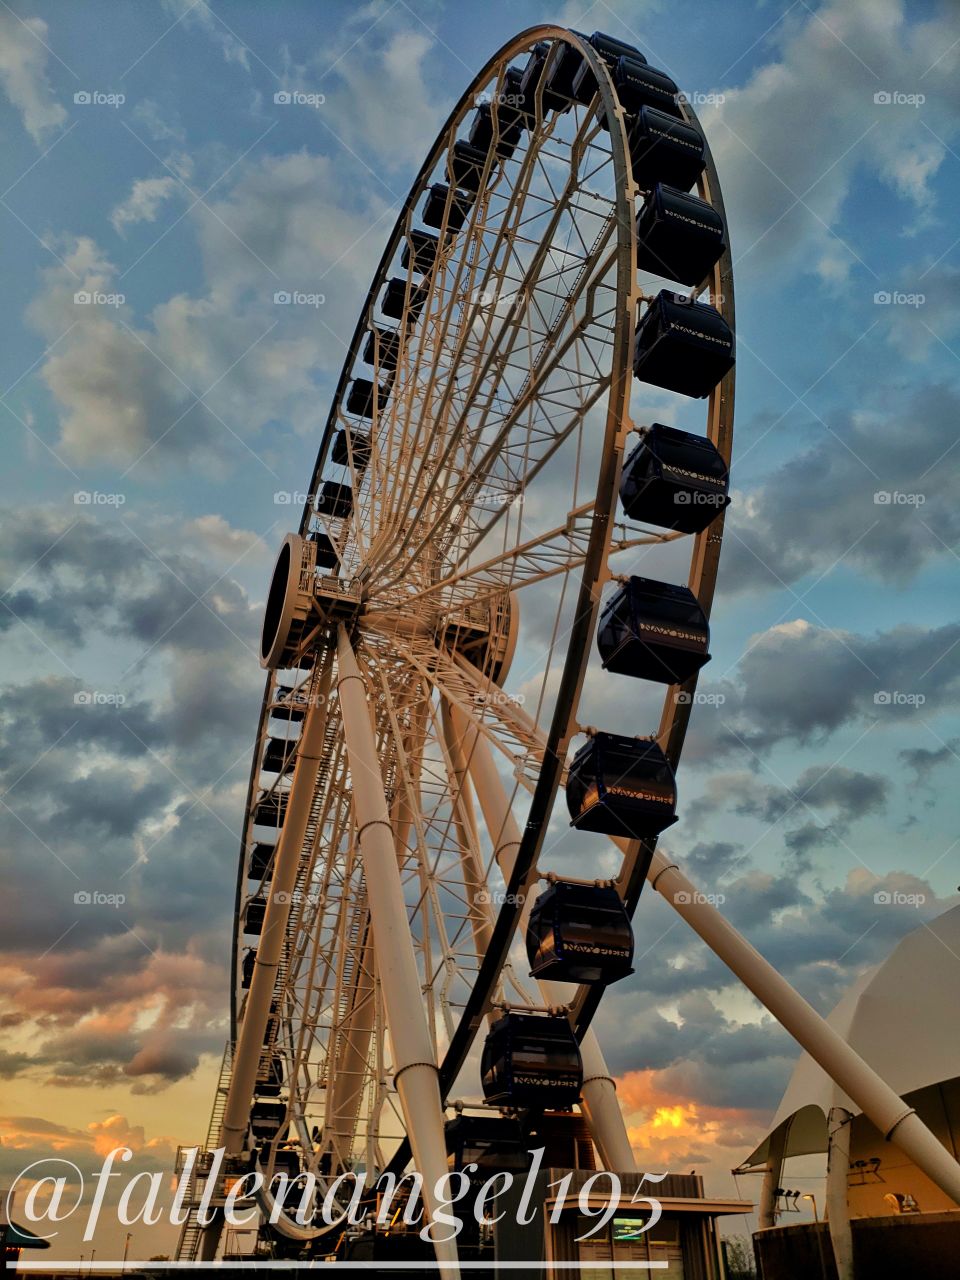 Navy Pier, Chicago IL ferris wheel